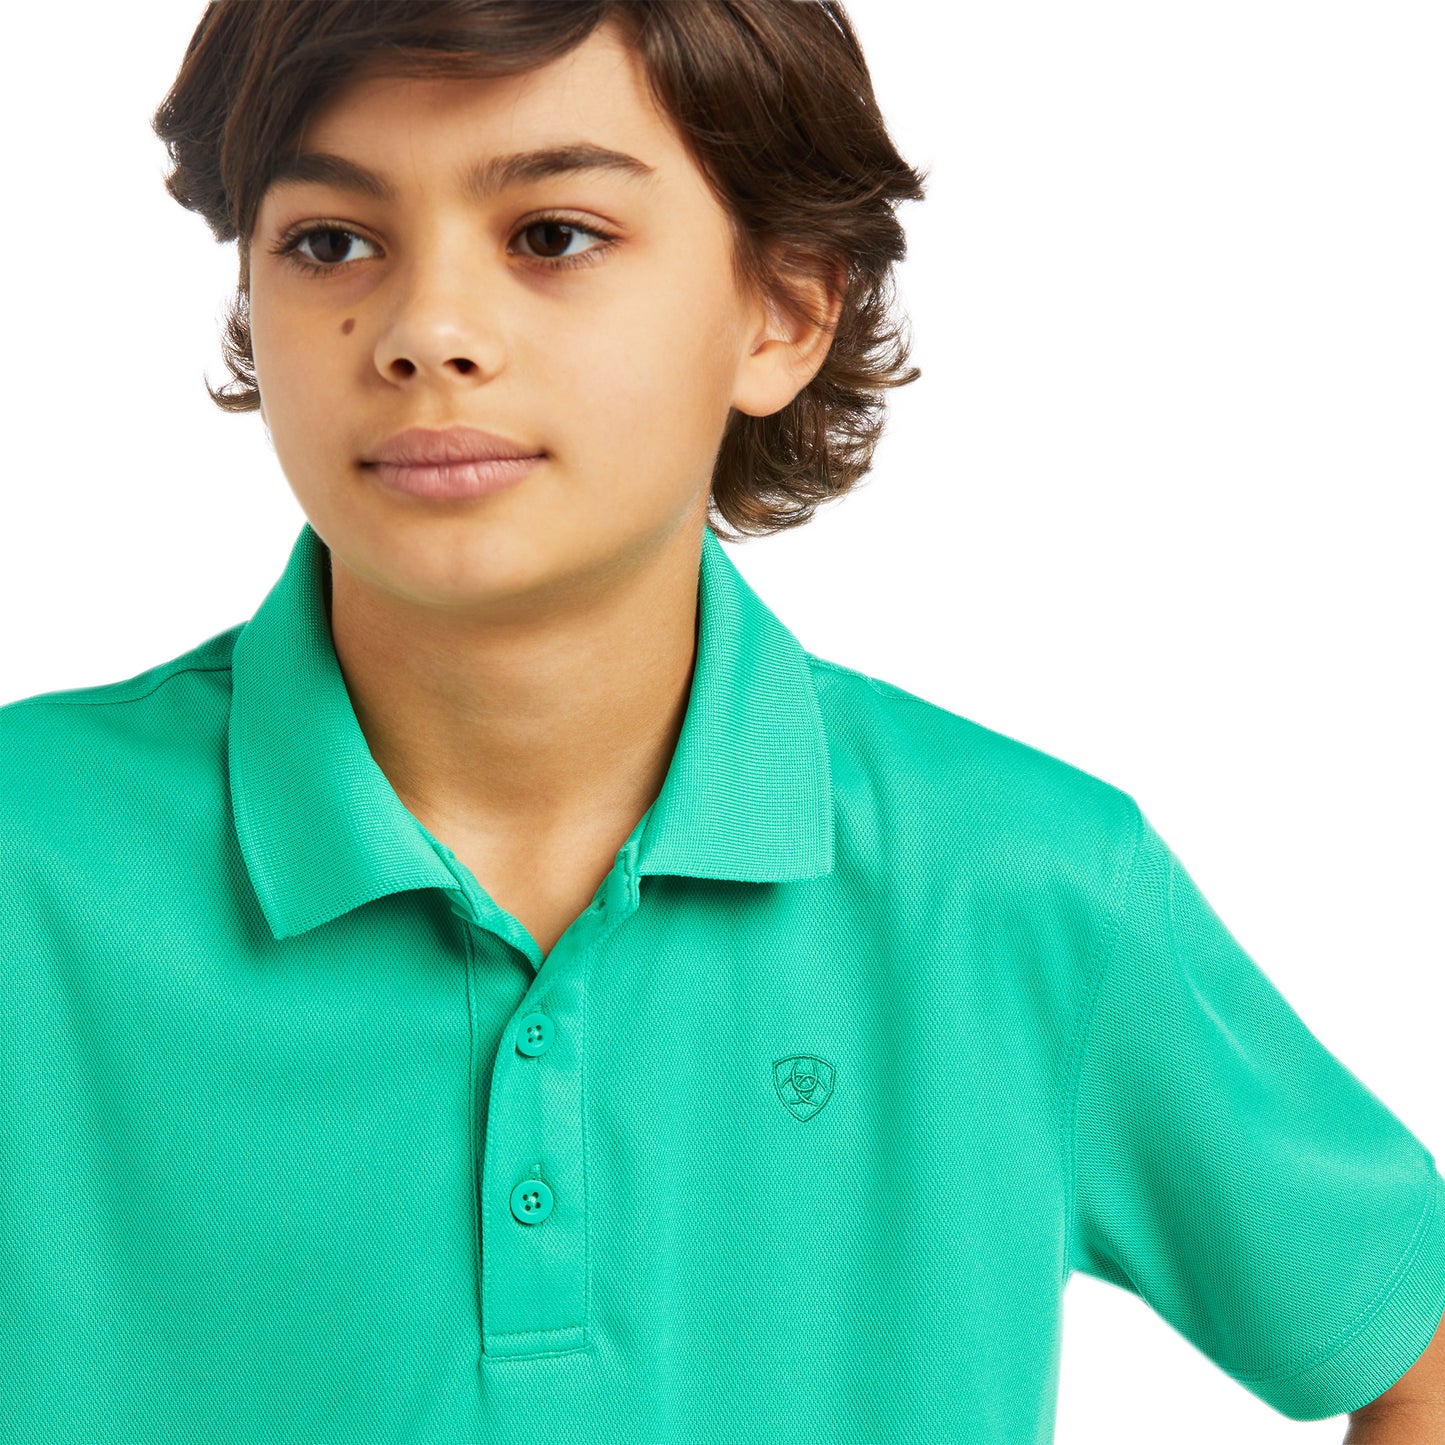 Ariat Boy's TEK Polo Mint Shirt 10039395